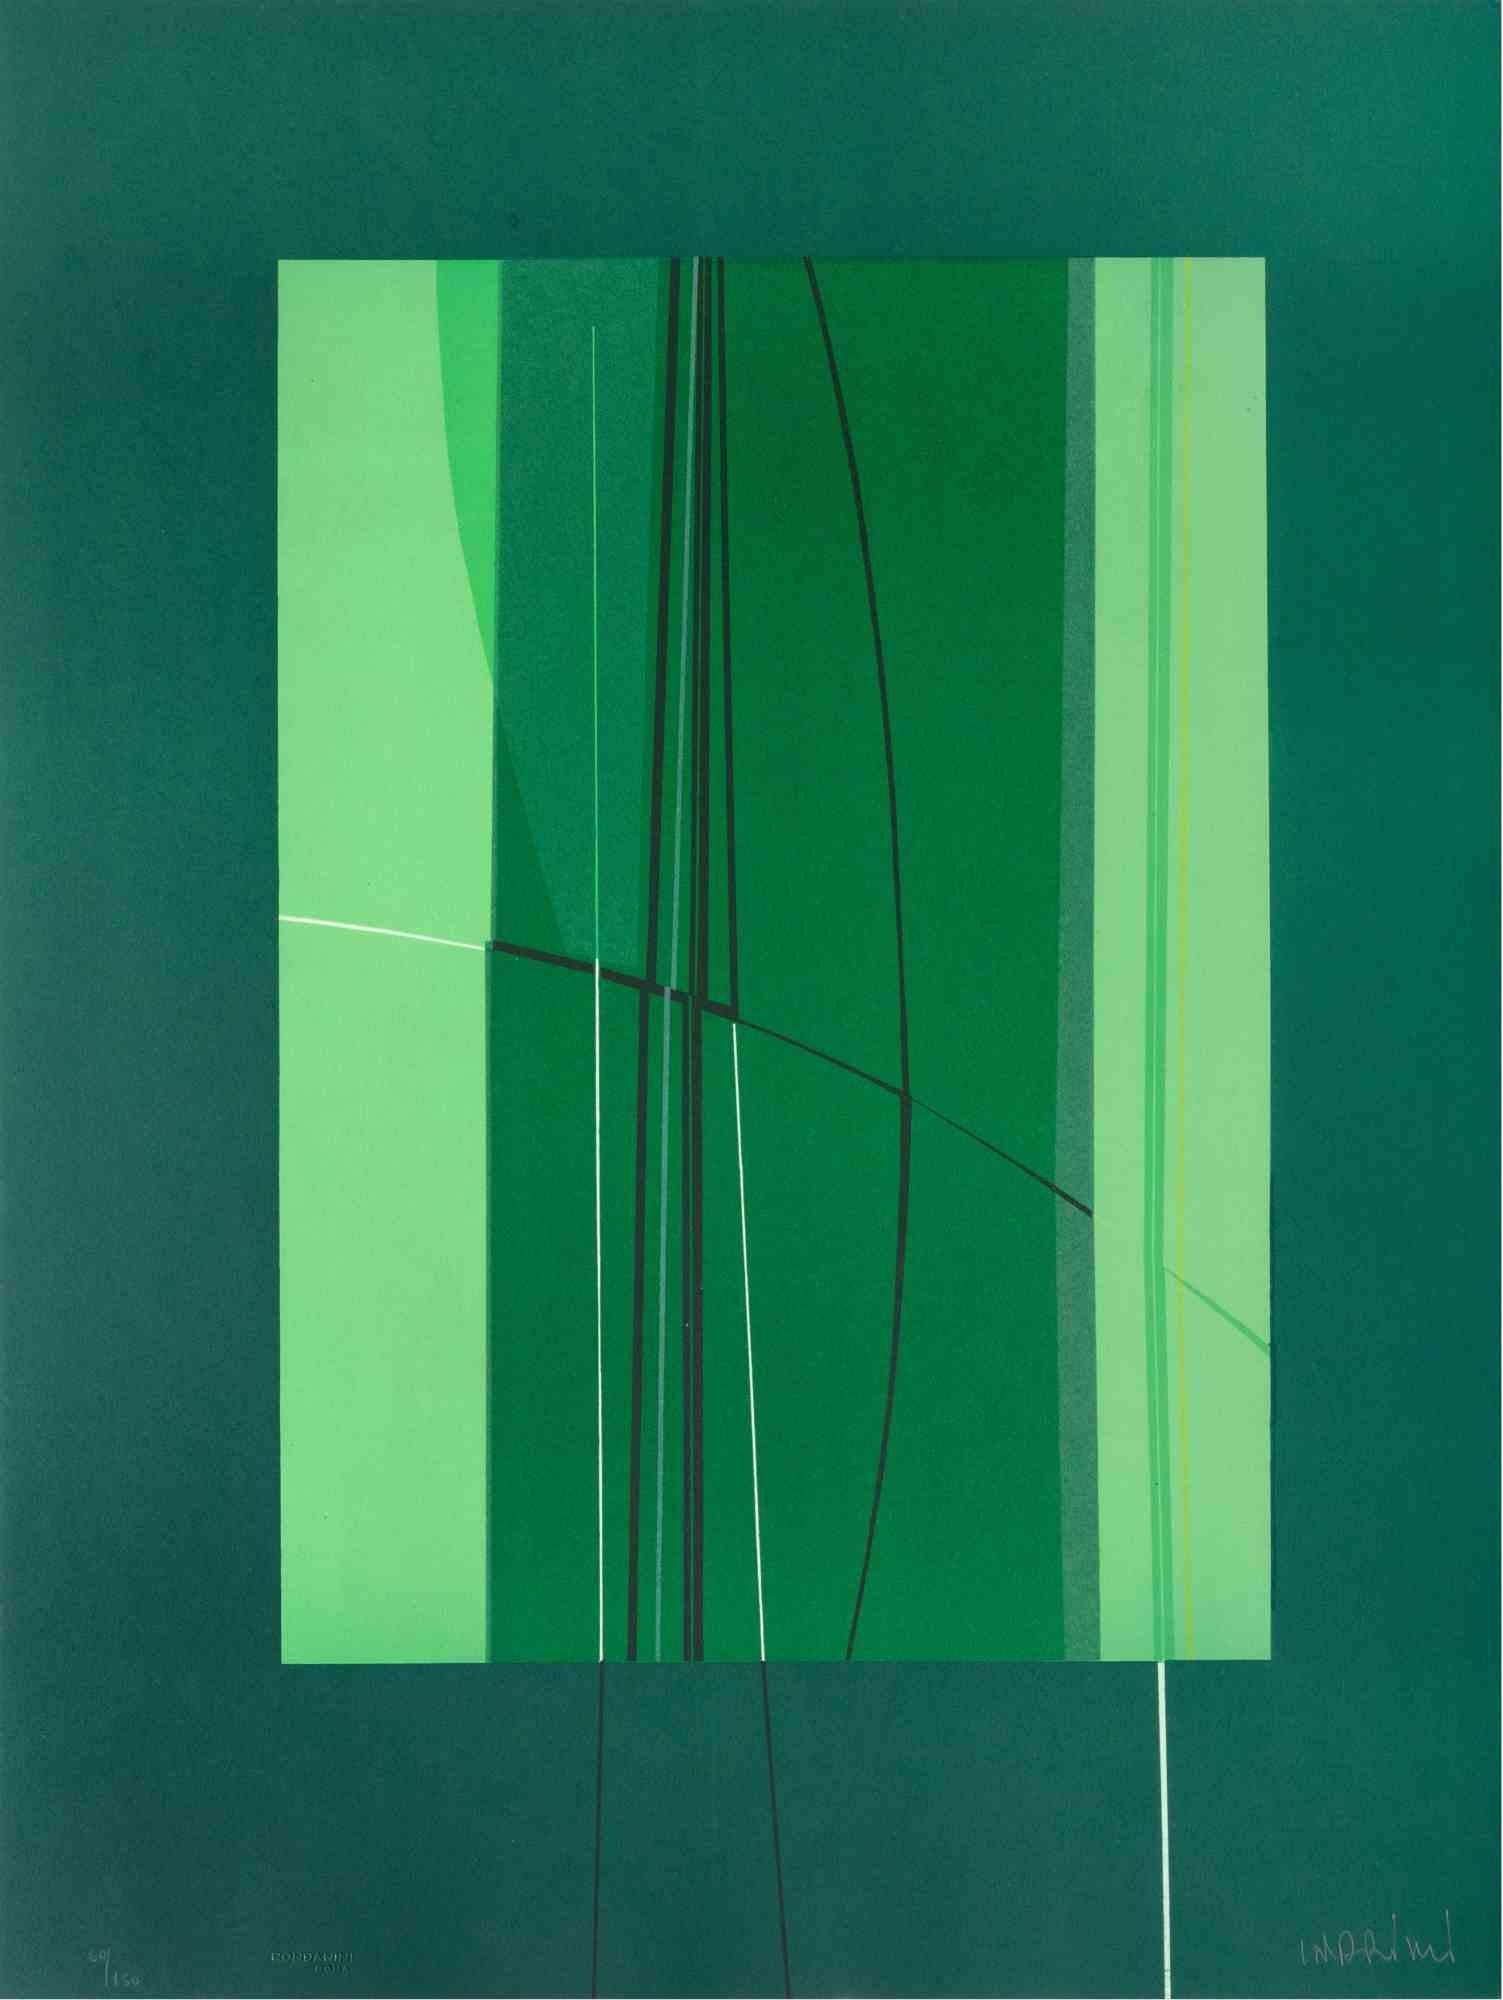 Green est une œuvre d'art contemporain réalisée par Lorenzo Indrimi dans les années 1970.

Lithographie en couleurs mélangées.

Signé à la main et daté dans la marge inférieure.

Édition de 60/150.